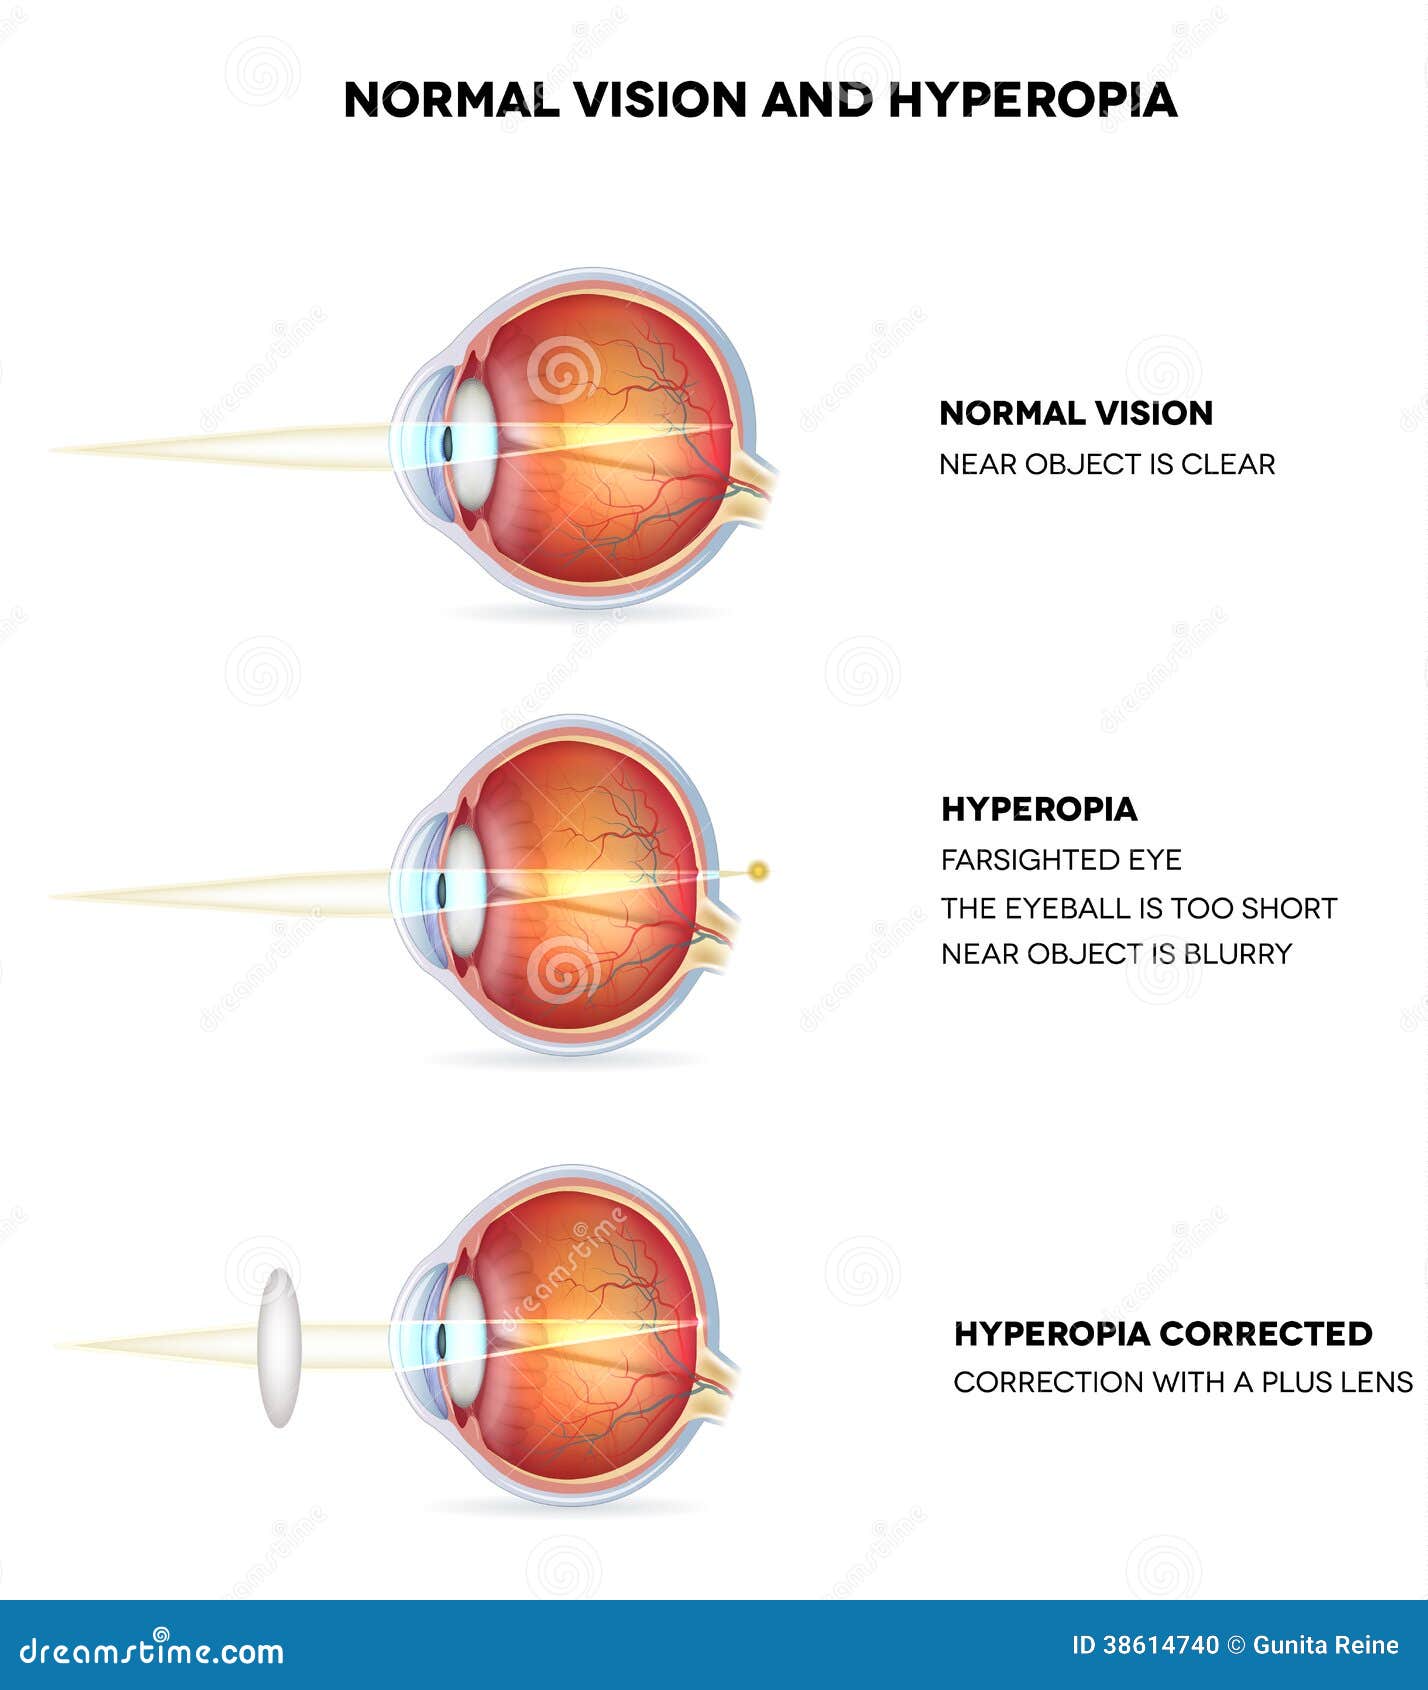 rúnák a látás kezelésére műtét a látás helyreállításához hogyan kell csinálni